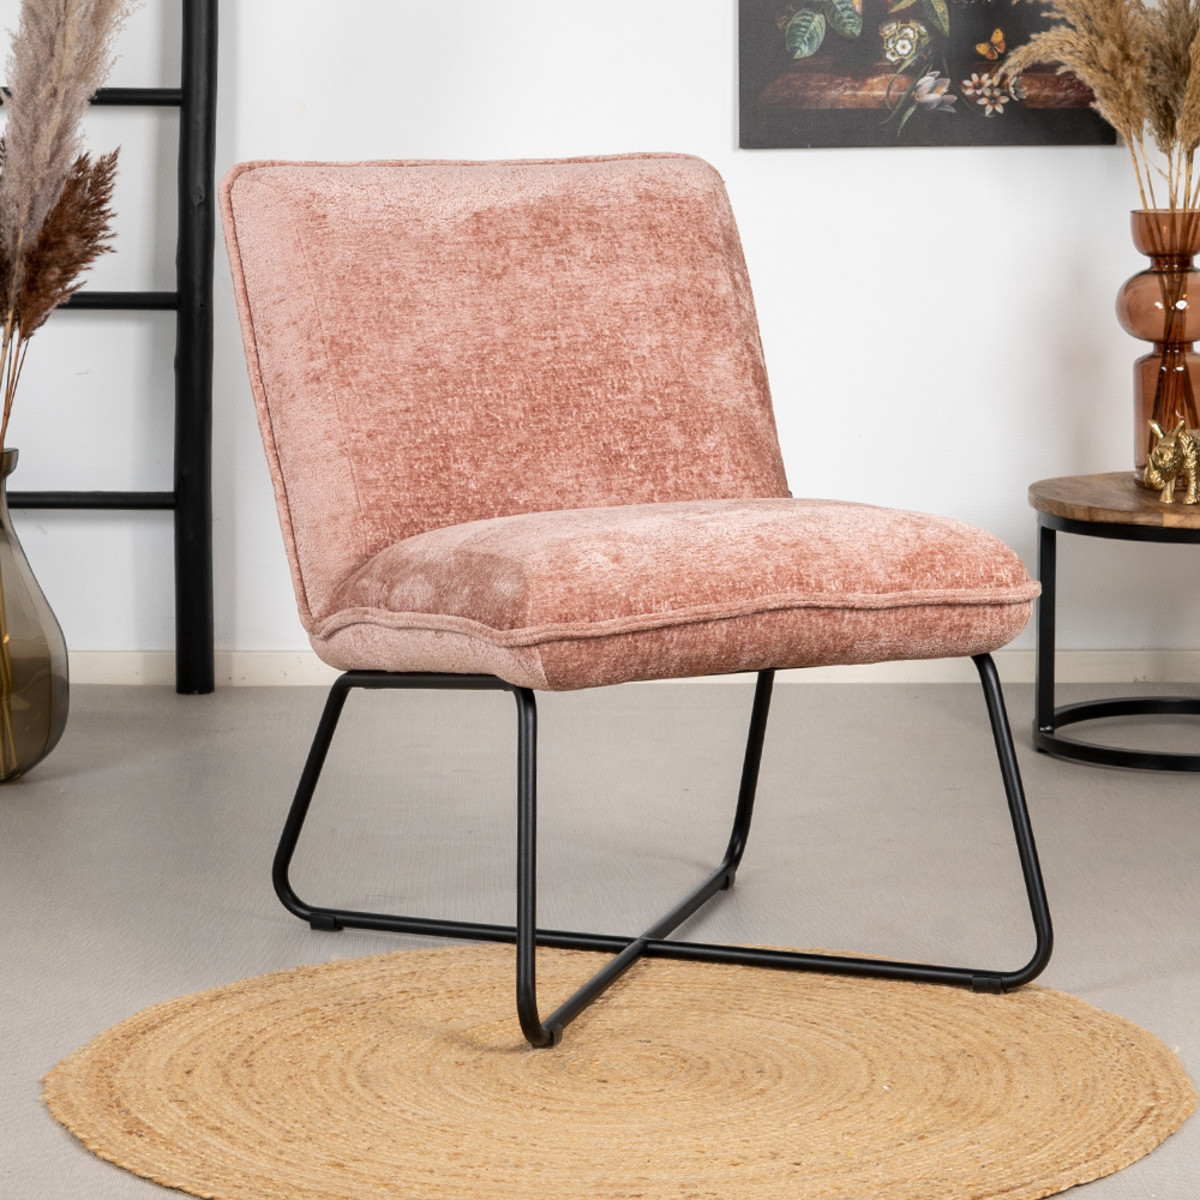 Ongewijzigd kruipen Denk vooruit Scandinavische fauteuil Sophie chenille roze | Livin24